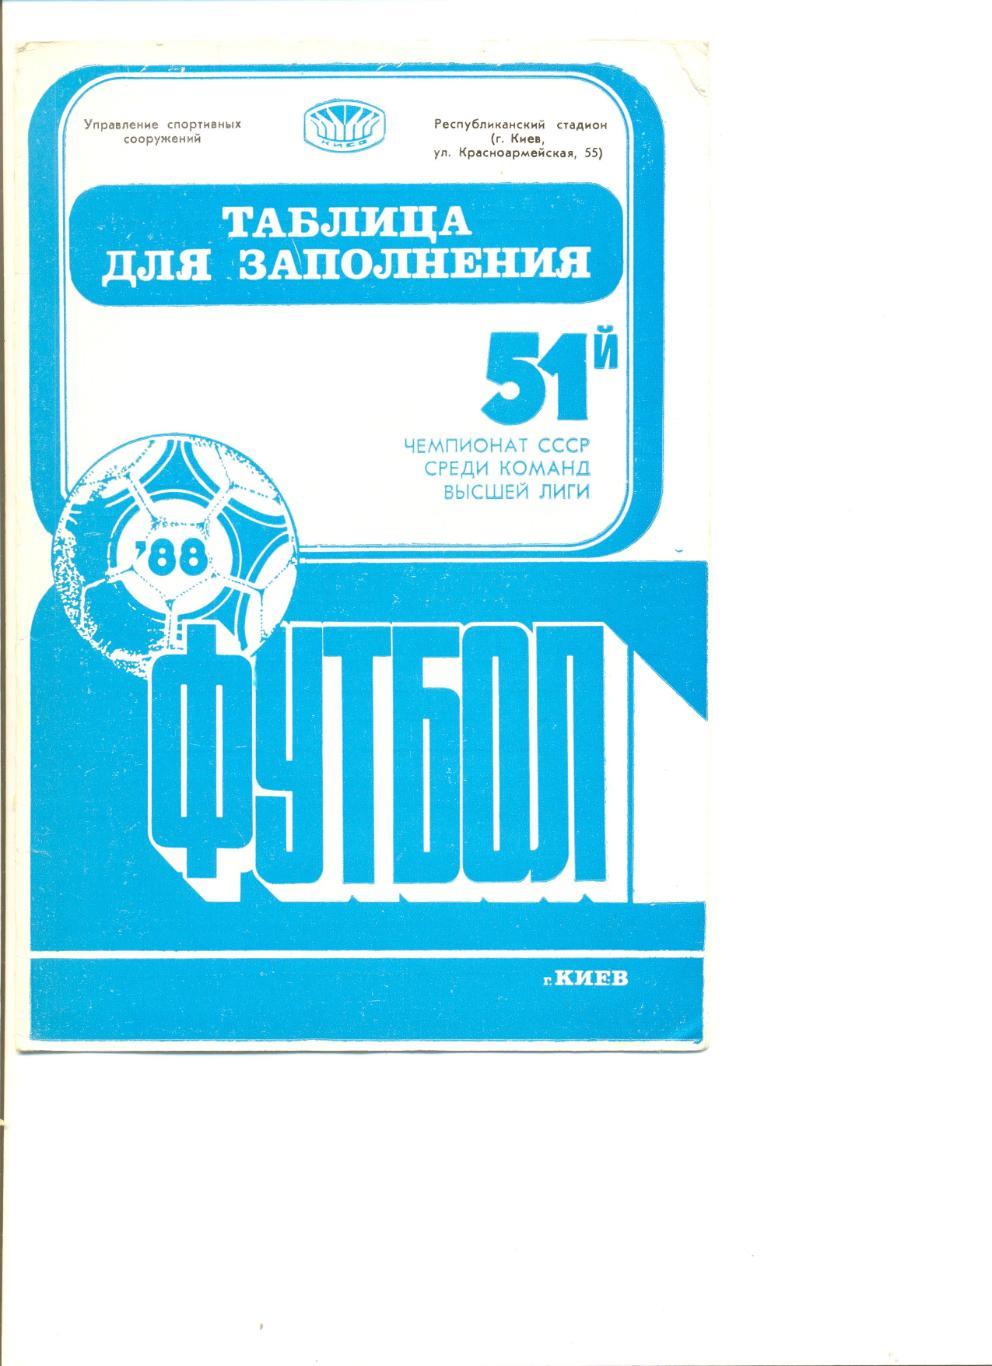 Таблица для заполнения и календарь игр. Динамо Киев 1988 г.